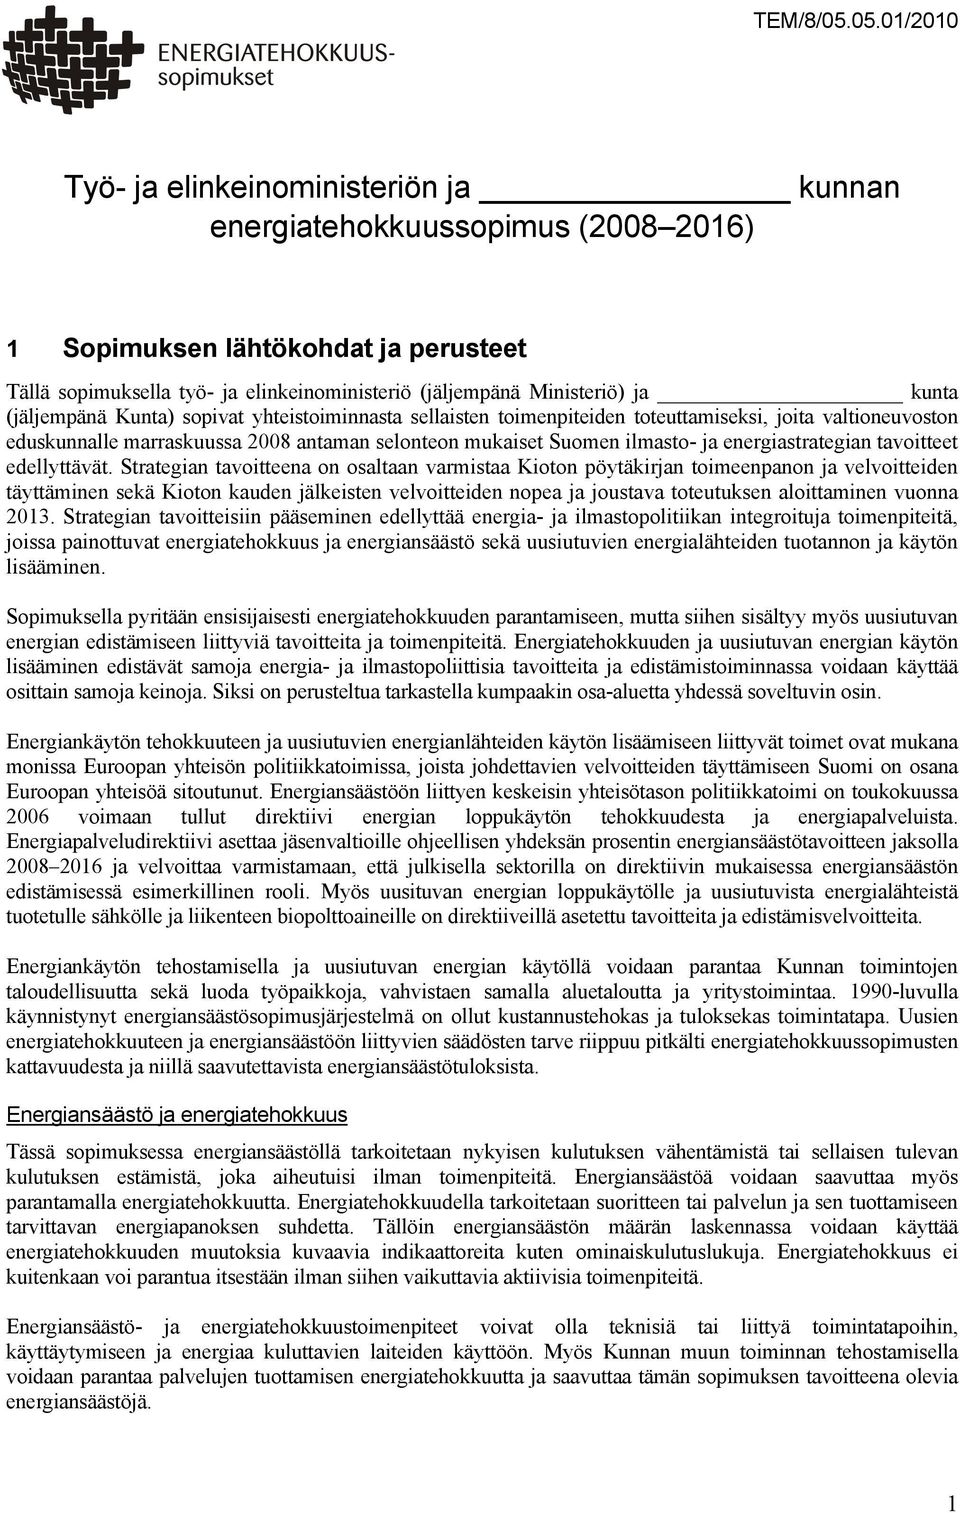 kunta (jäljempänä Kunta) sopivat yhteistoiminnasta sellaisten toimenpiteiden toteuttamiseksi, joita valtioneuvoston eduskunnalle marraskuussa 2008 antaman selonteon mukaiset Suomen ilmasto- ja